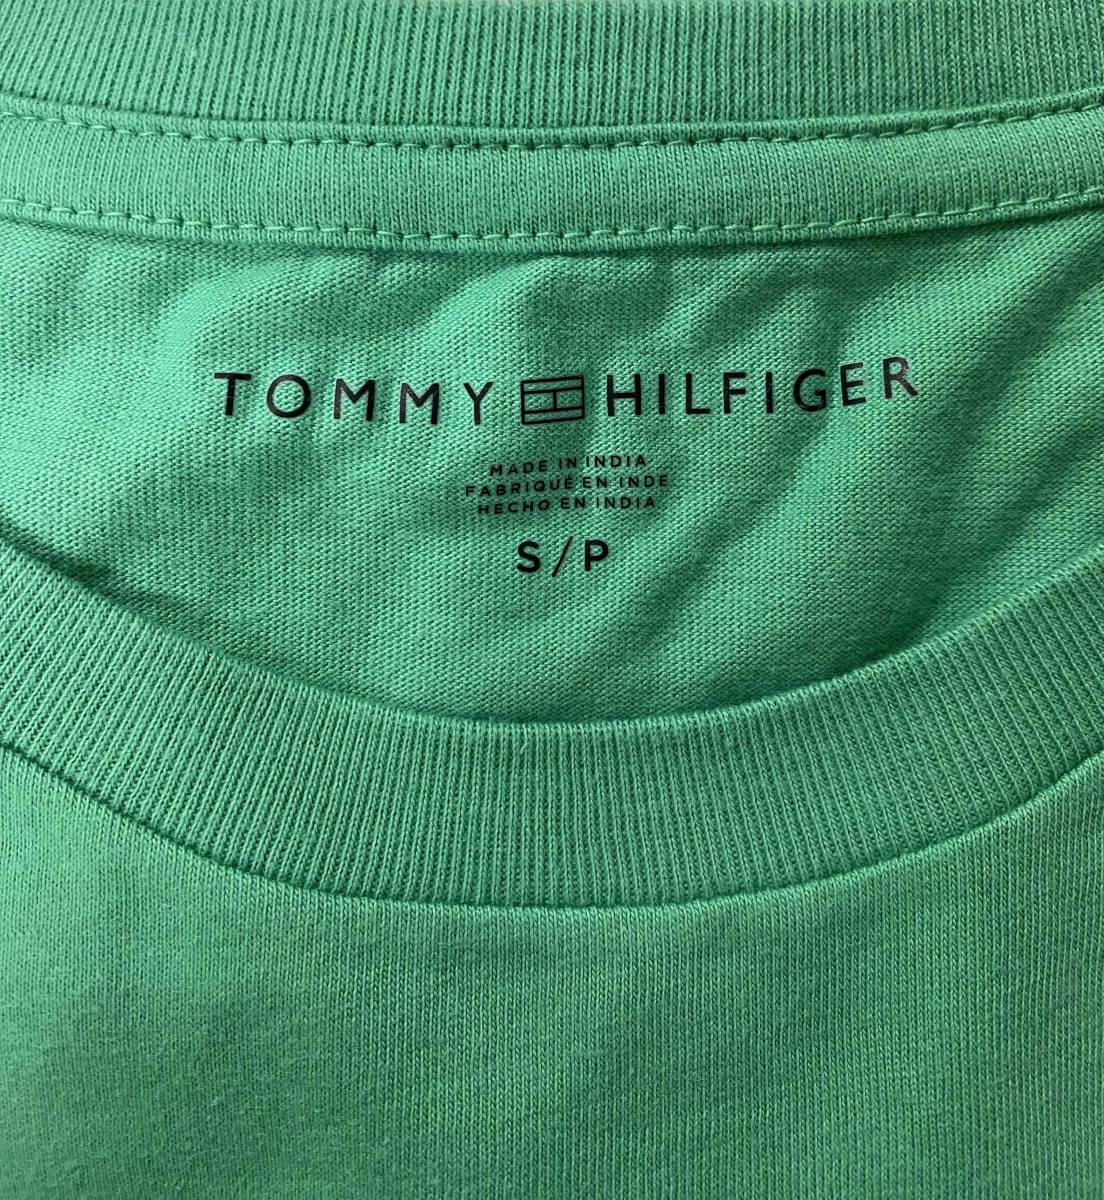 新品 M ★ TOMMY HILFIGER トミーヒルフィガー メンズ 半袖 ロゴ Tシャツ グリーン US-S ロゴ刺繍 ビッグロゴ レディース ユニセックス